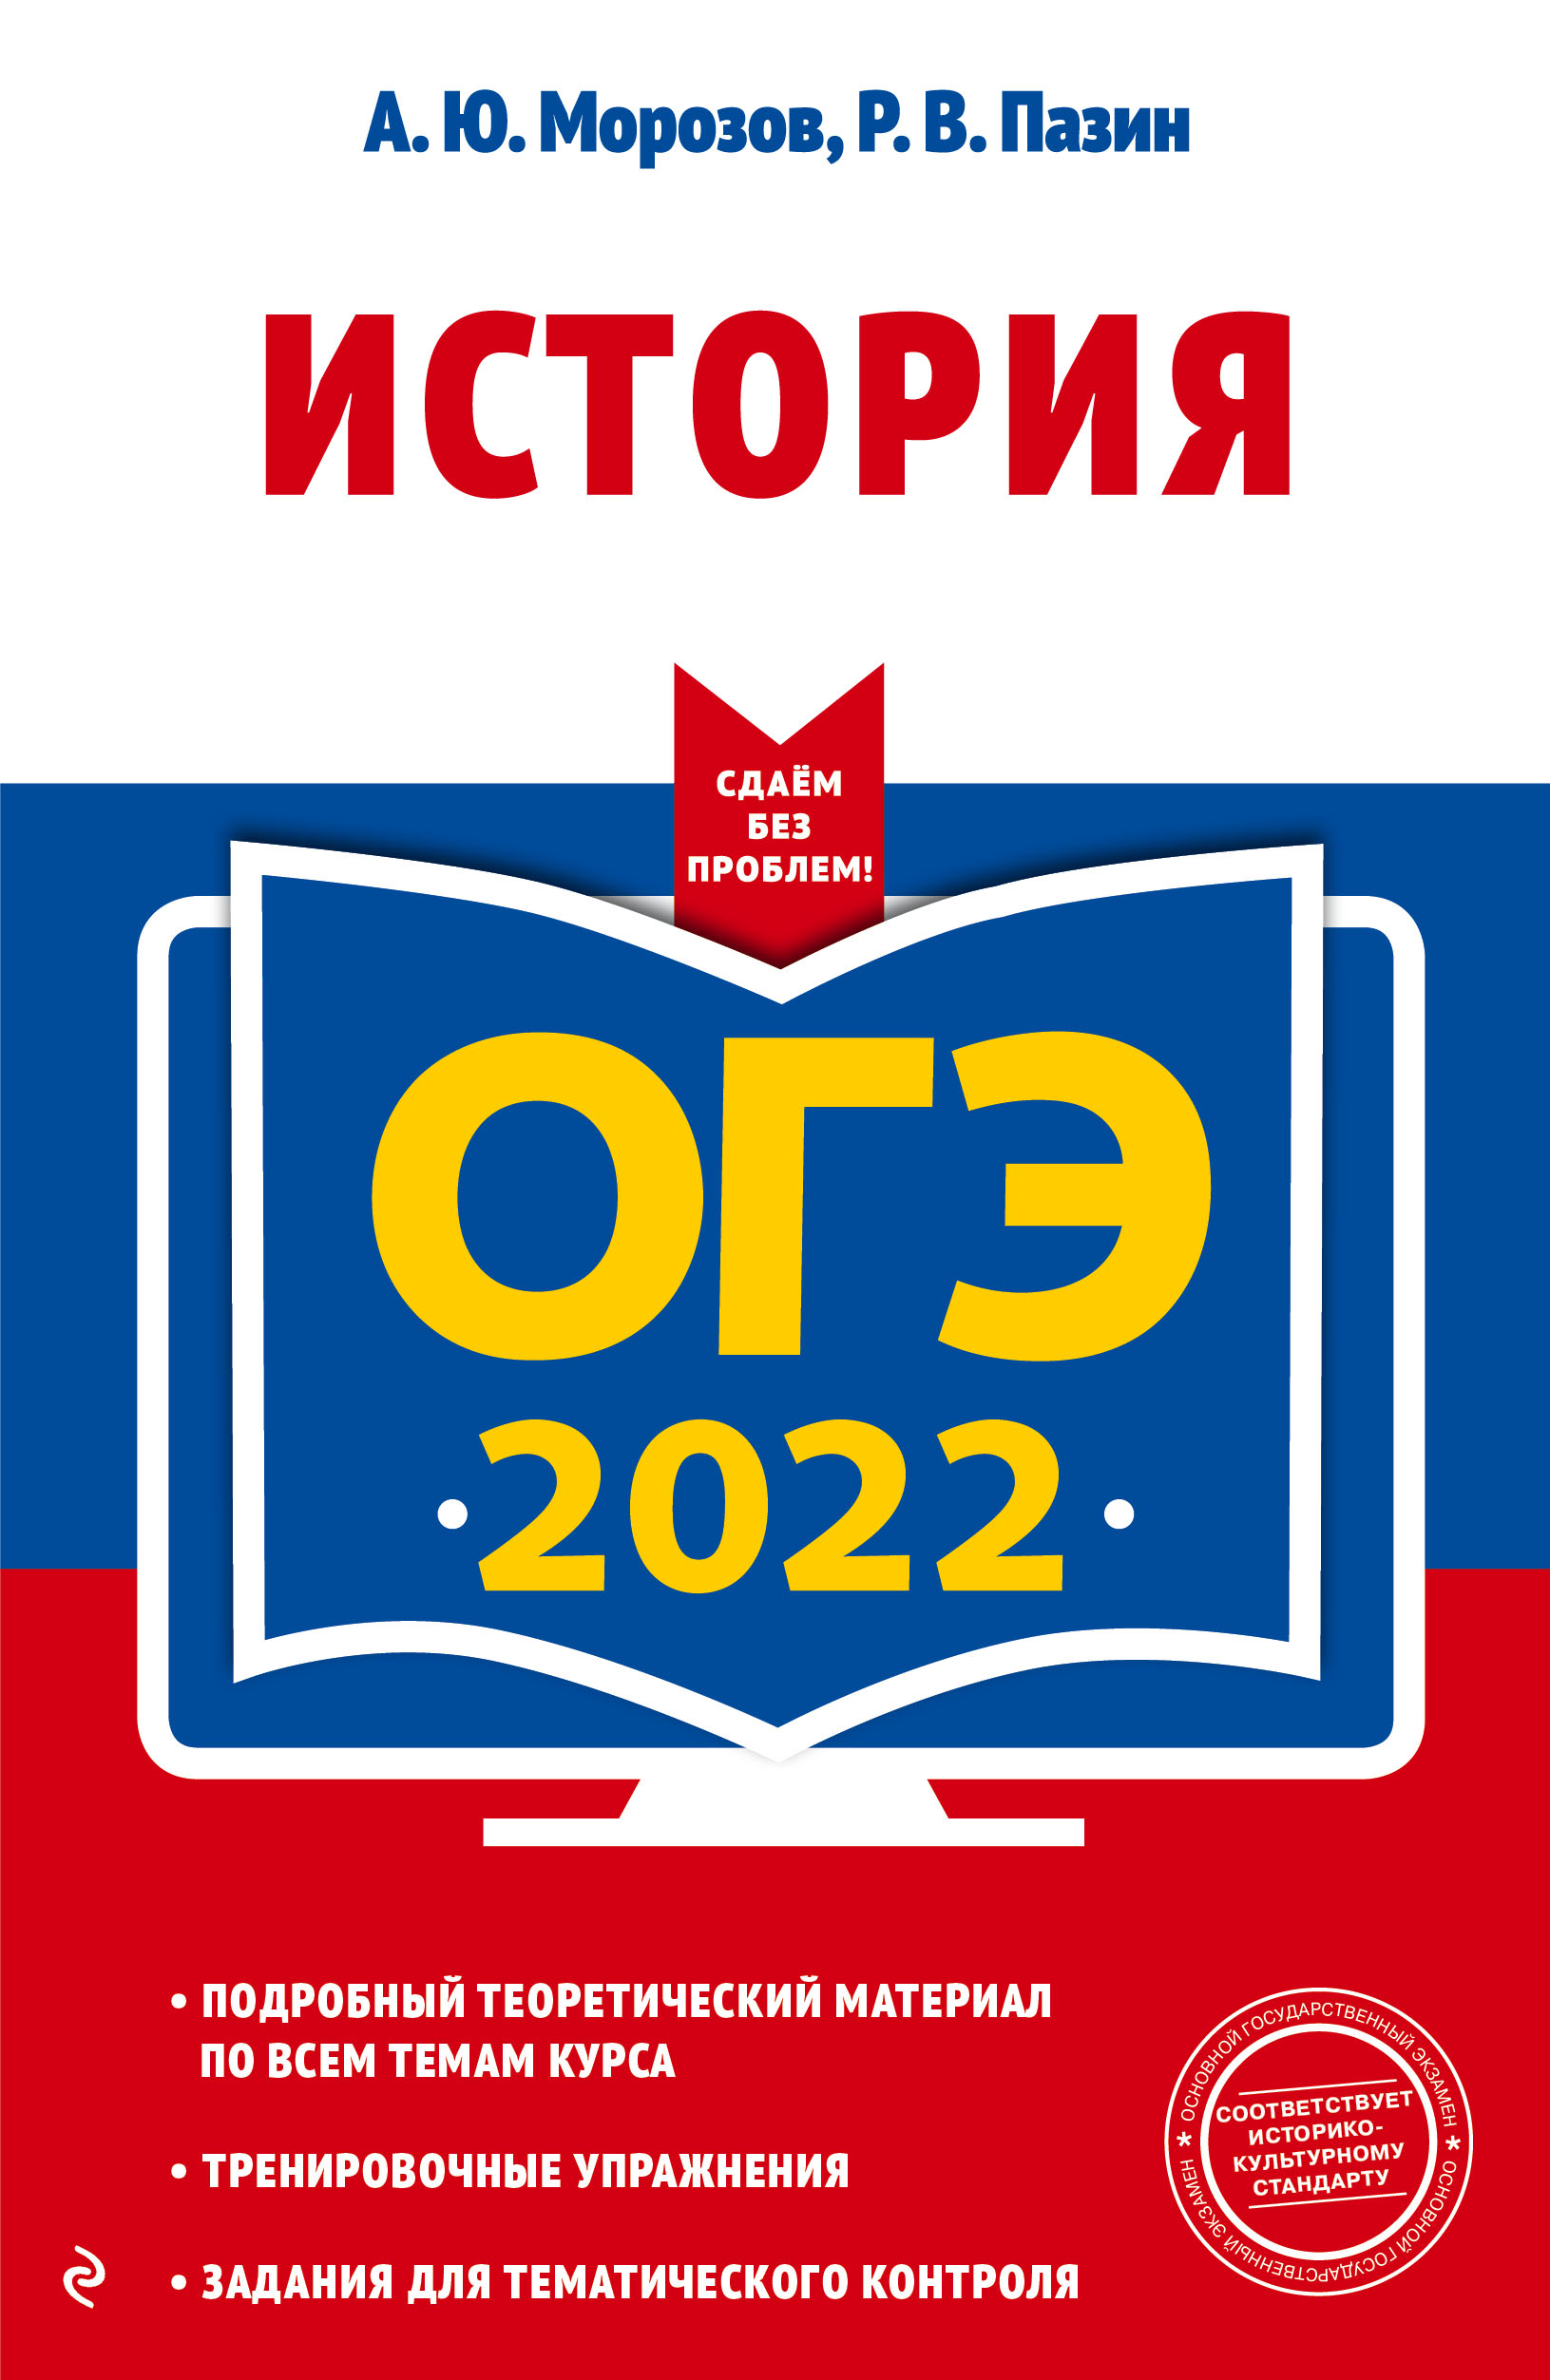  ..,  .. -2022.  